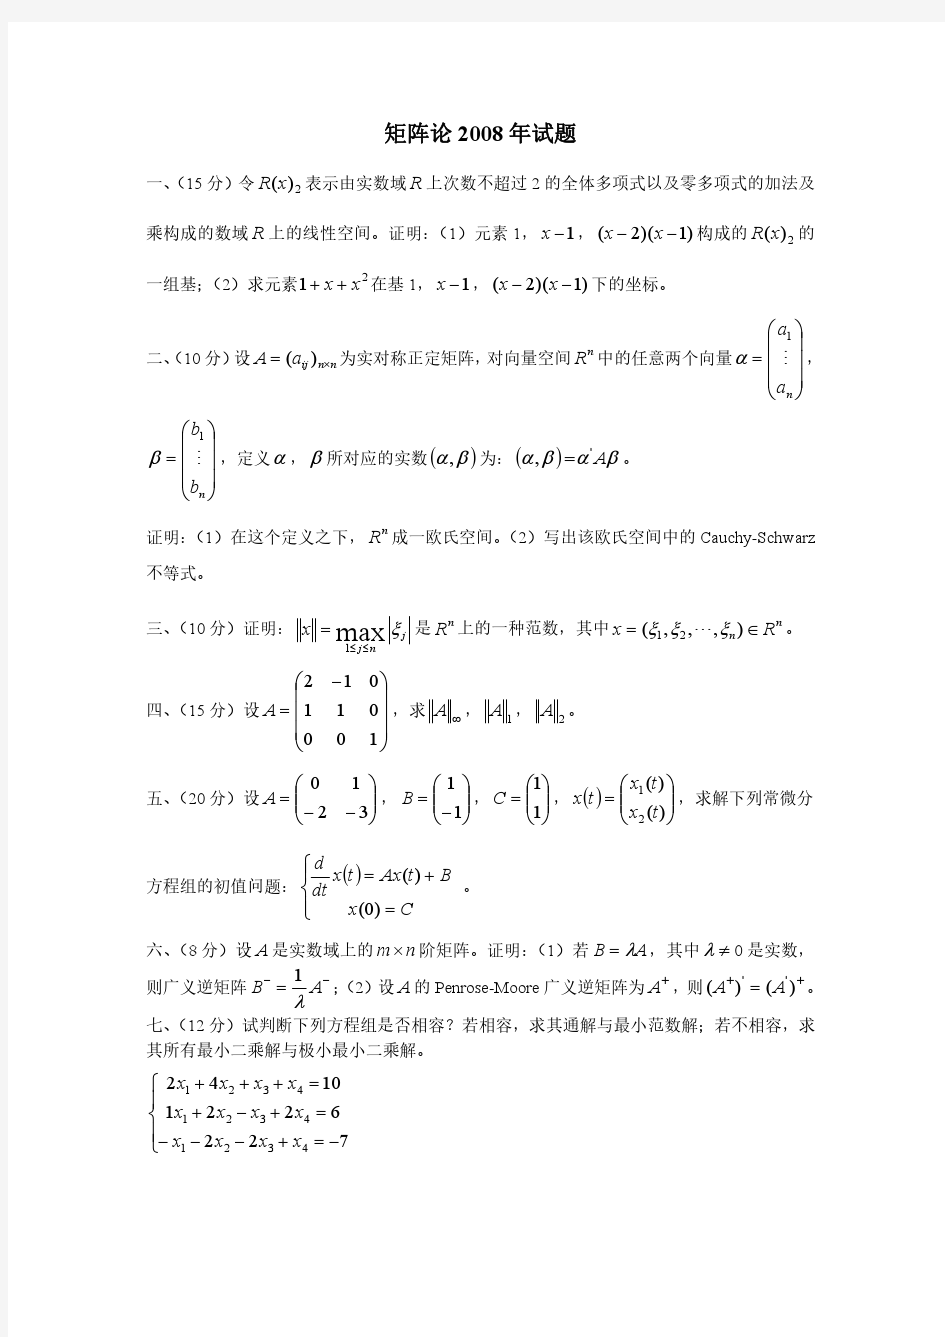 重庆大学2008年矩阵论研究生考试试题